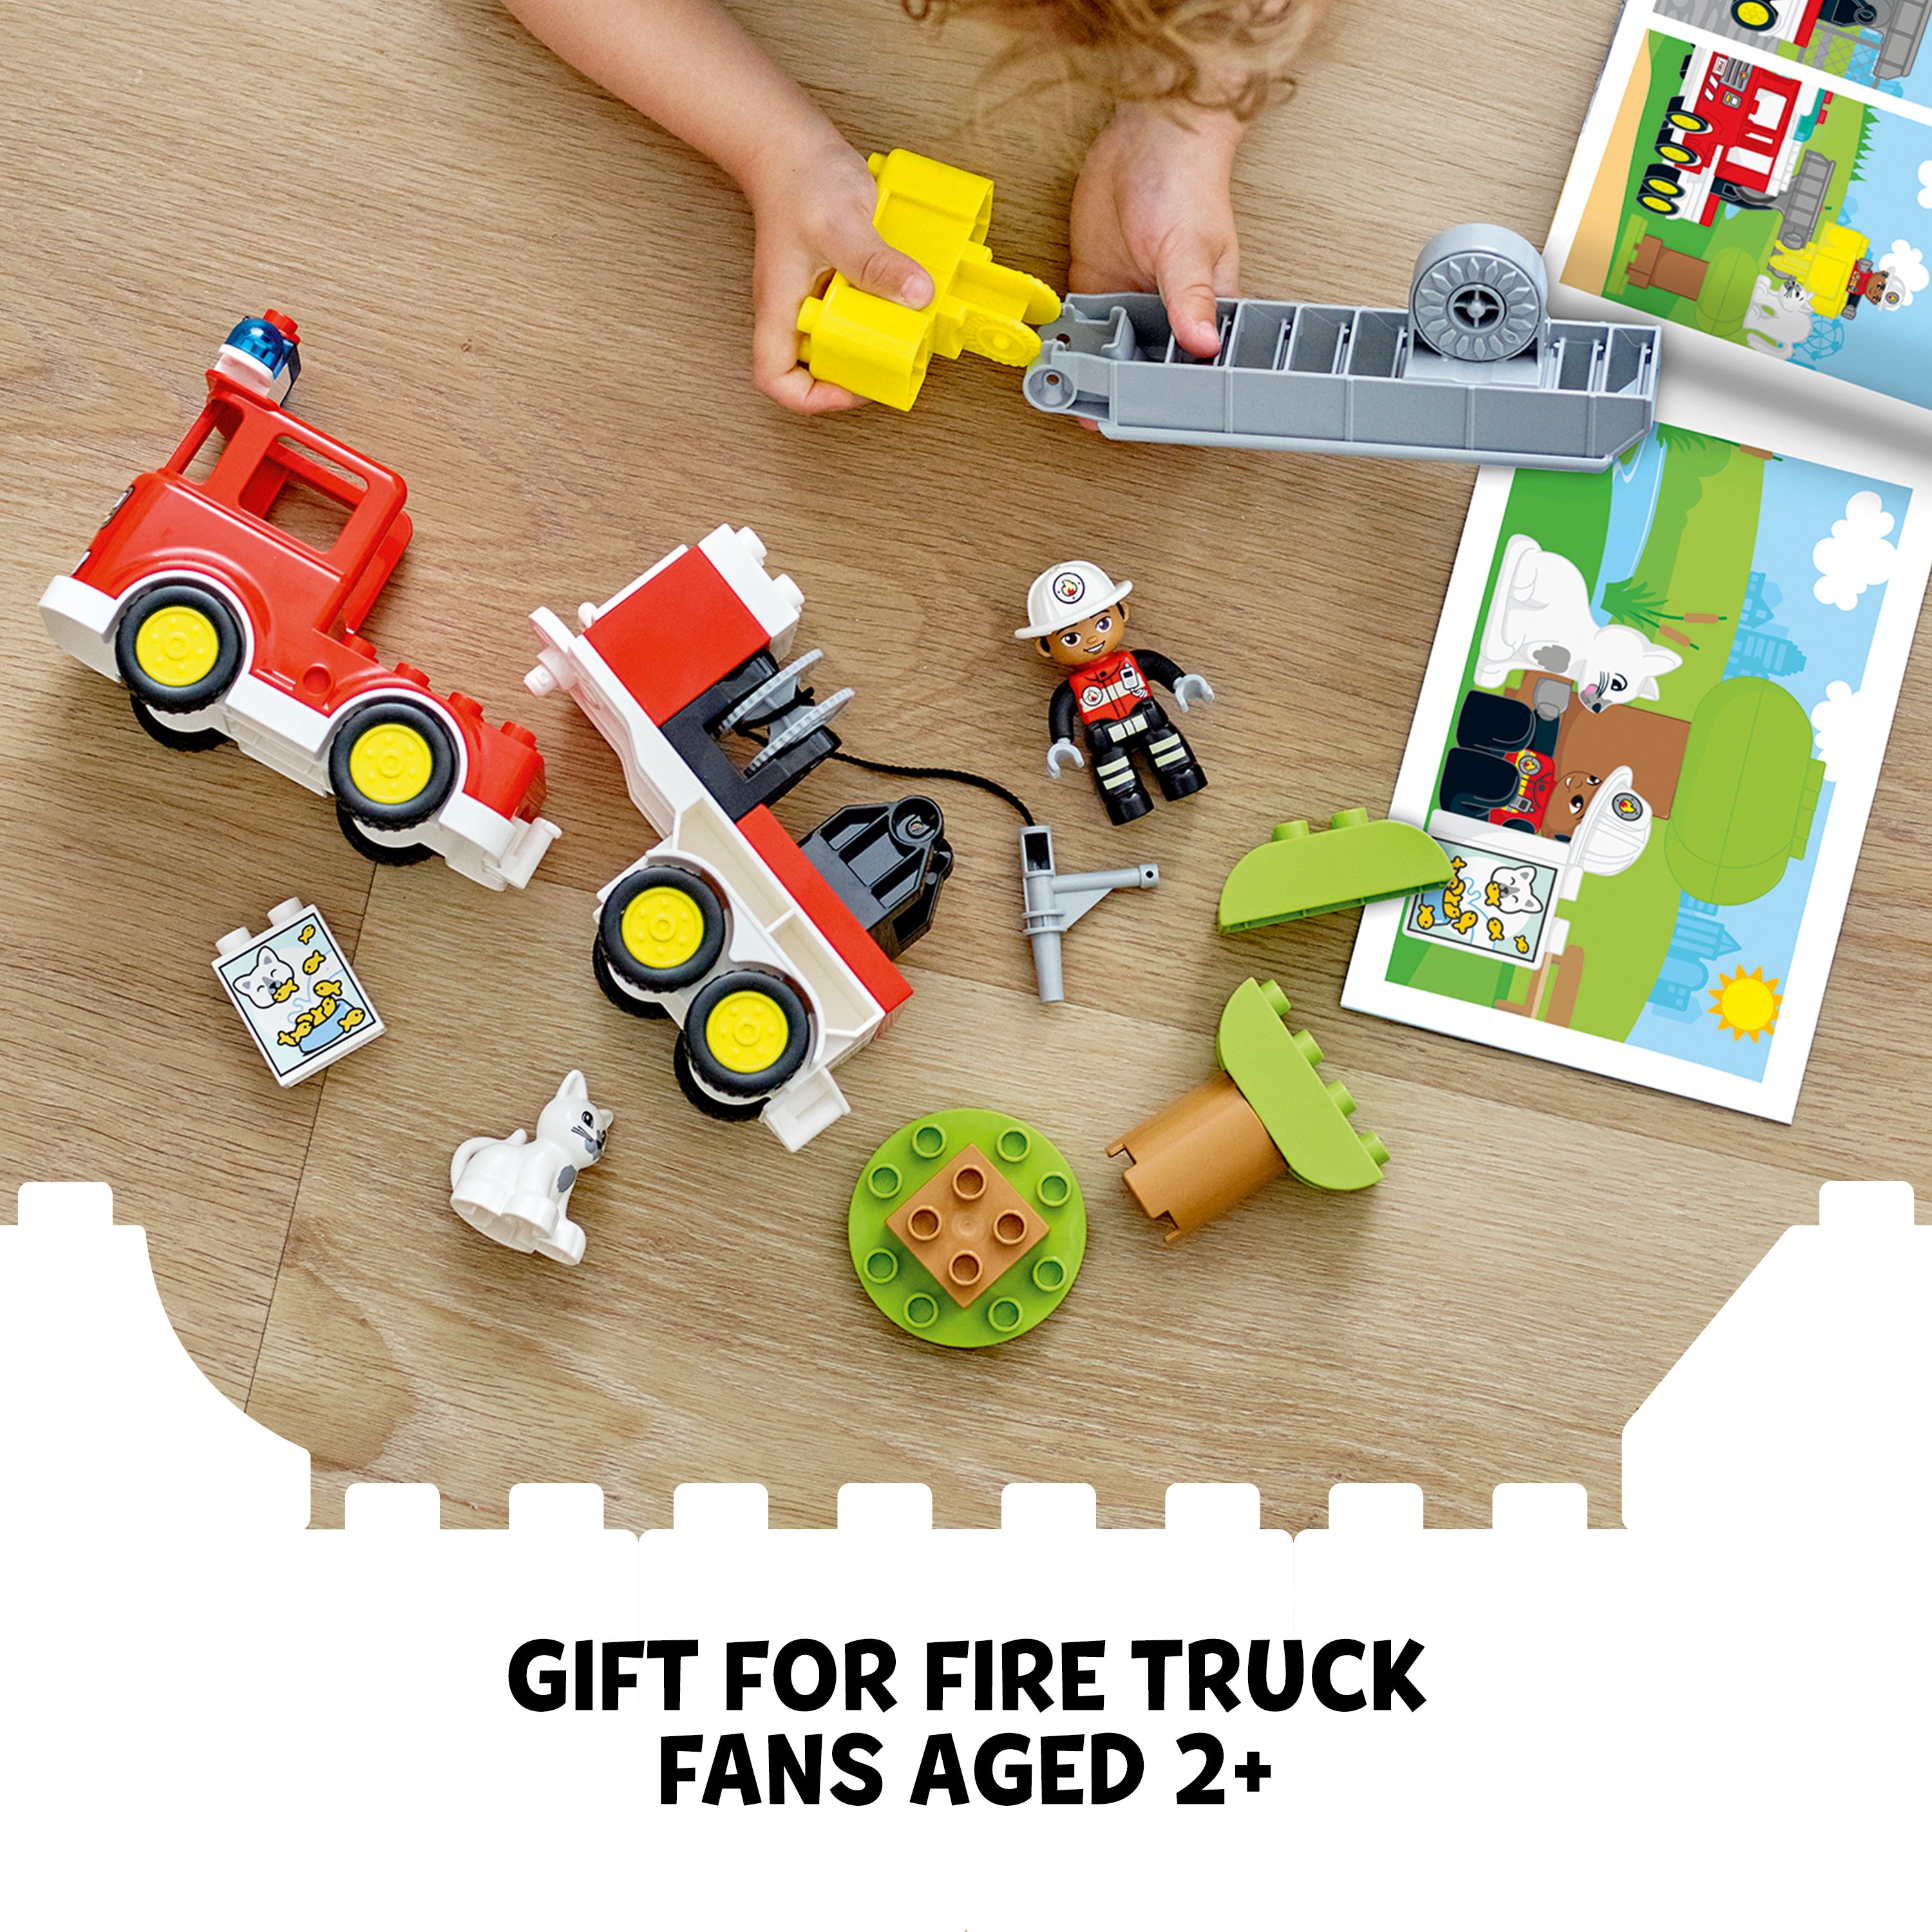 Lego 10969 Duplo Fire Truck